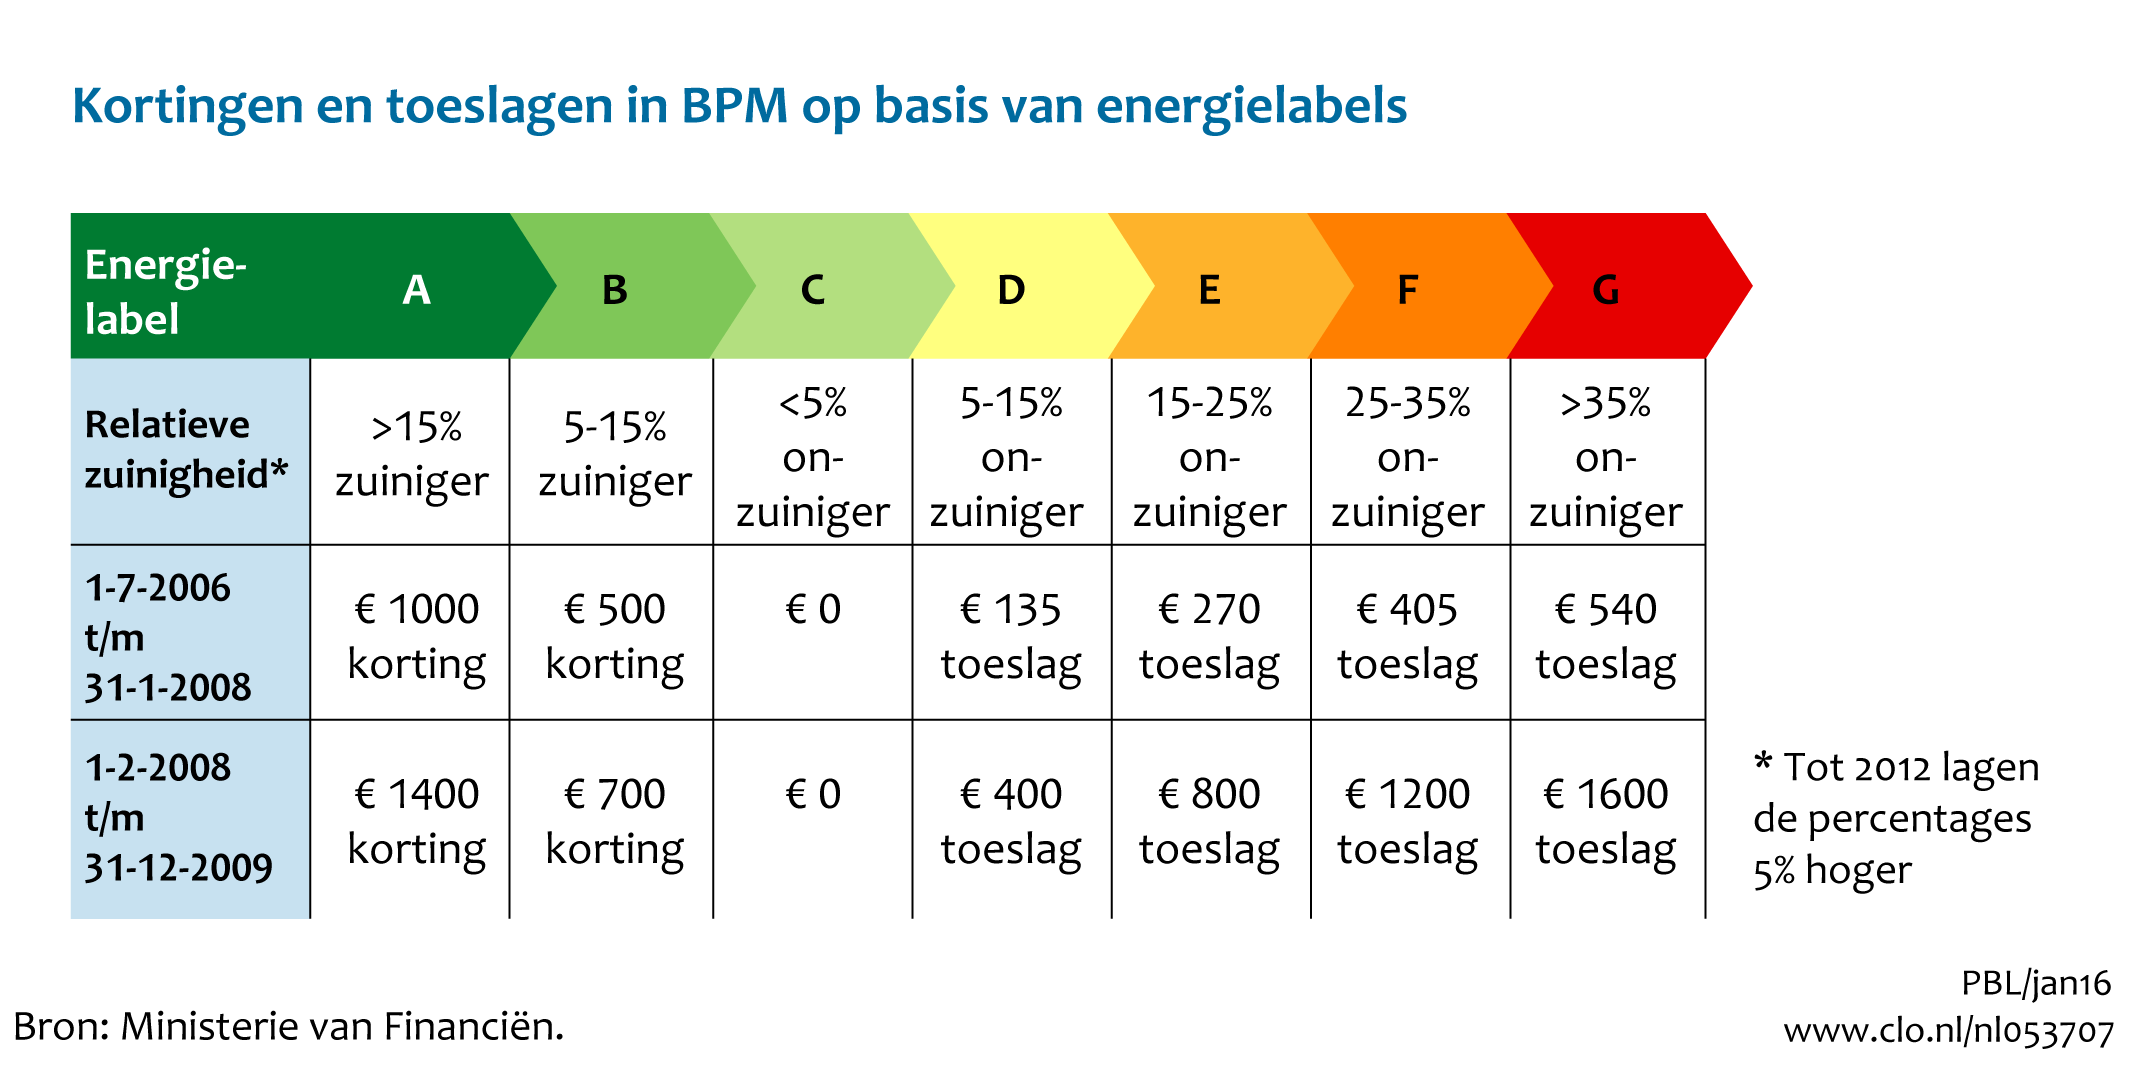 Figuur  Kortingen en toeslagen in BPM op basis van energielabels. In de rest van de tekst wordt deze figuur uitgebreider uitgelegd.